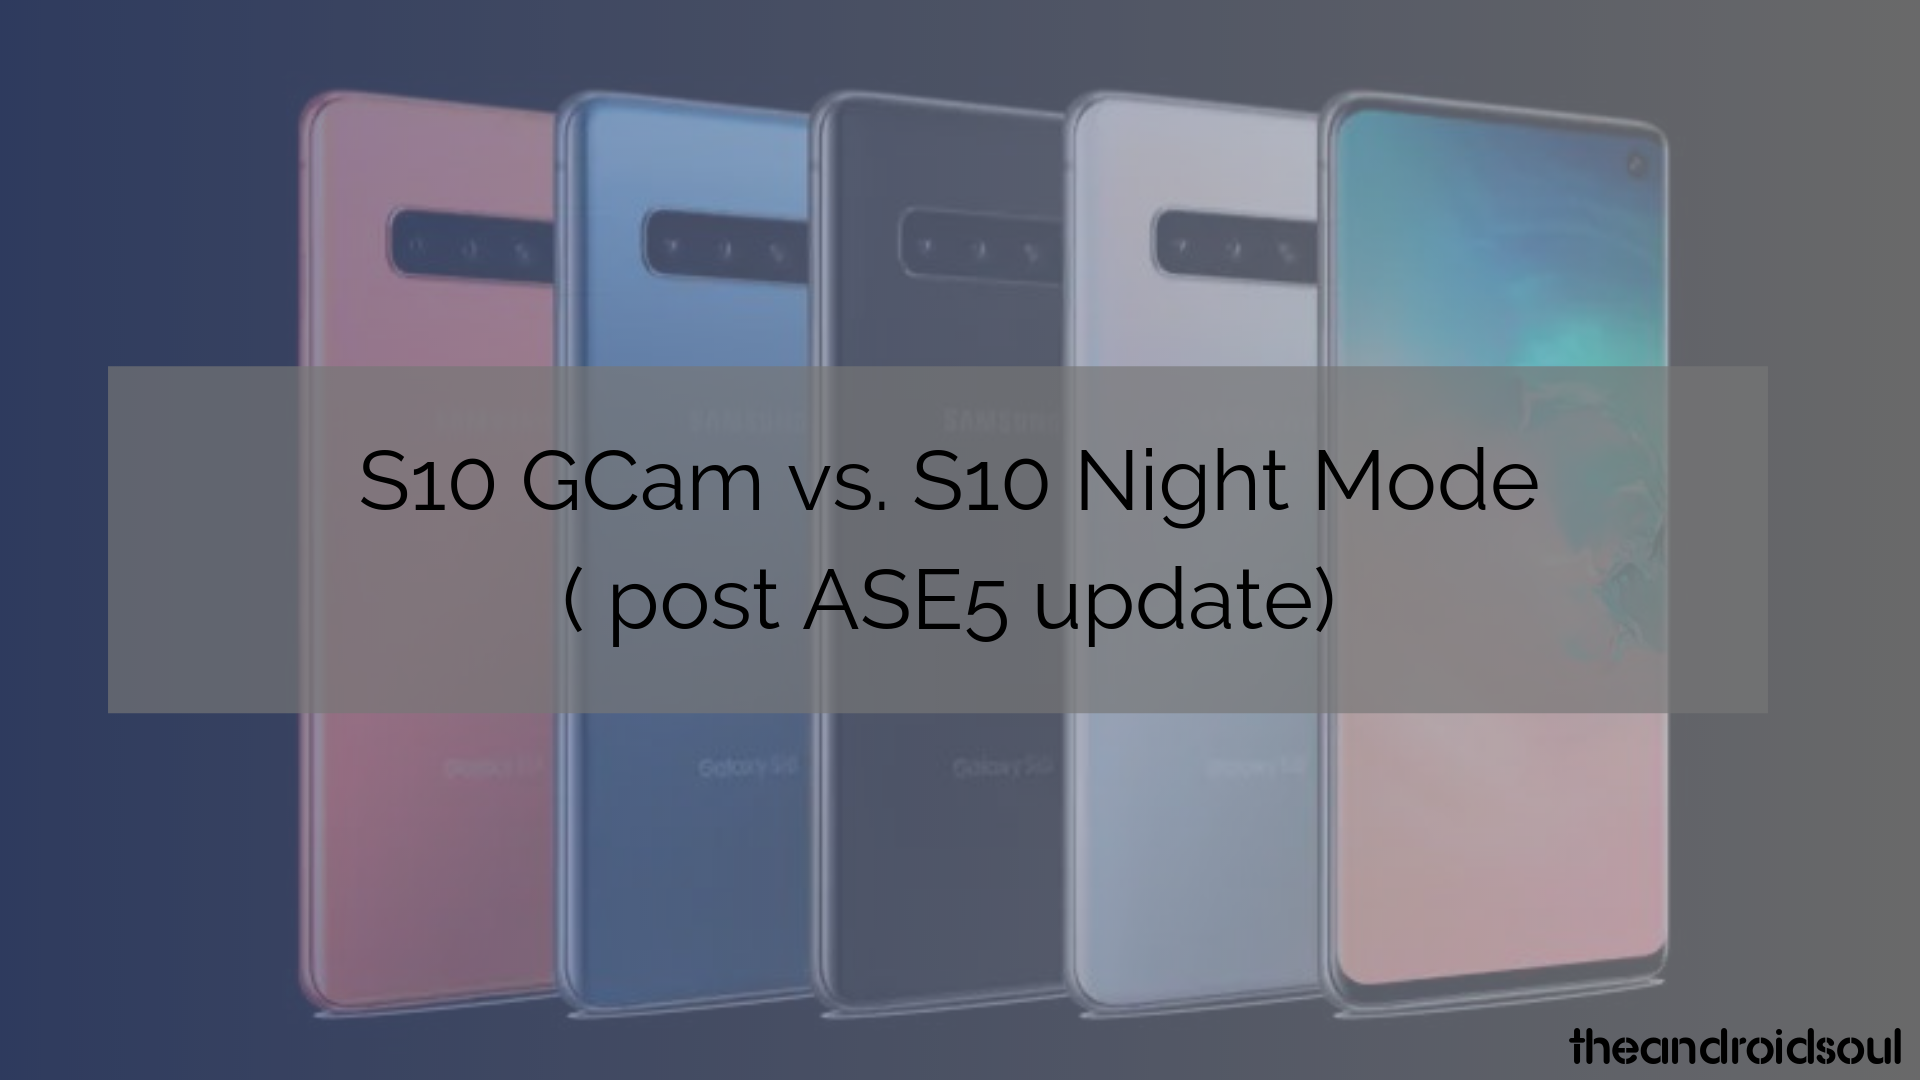 El modo nocturno del Galaxy S10 ha mejorado significativamente, mira esta comparación de Gcam